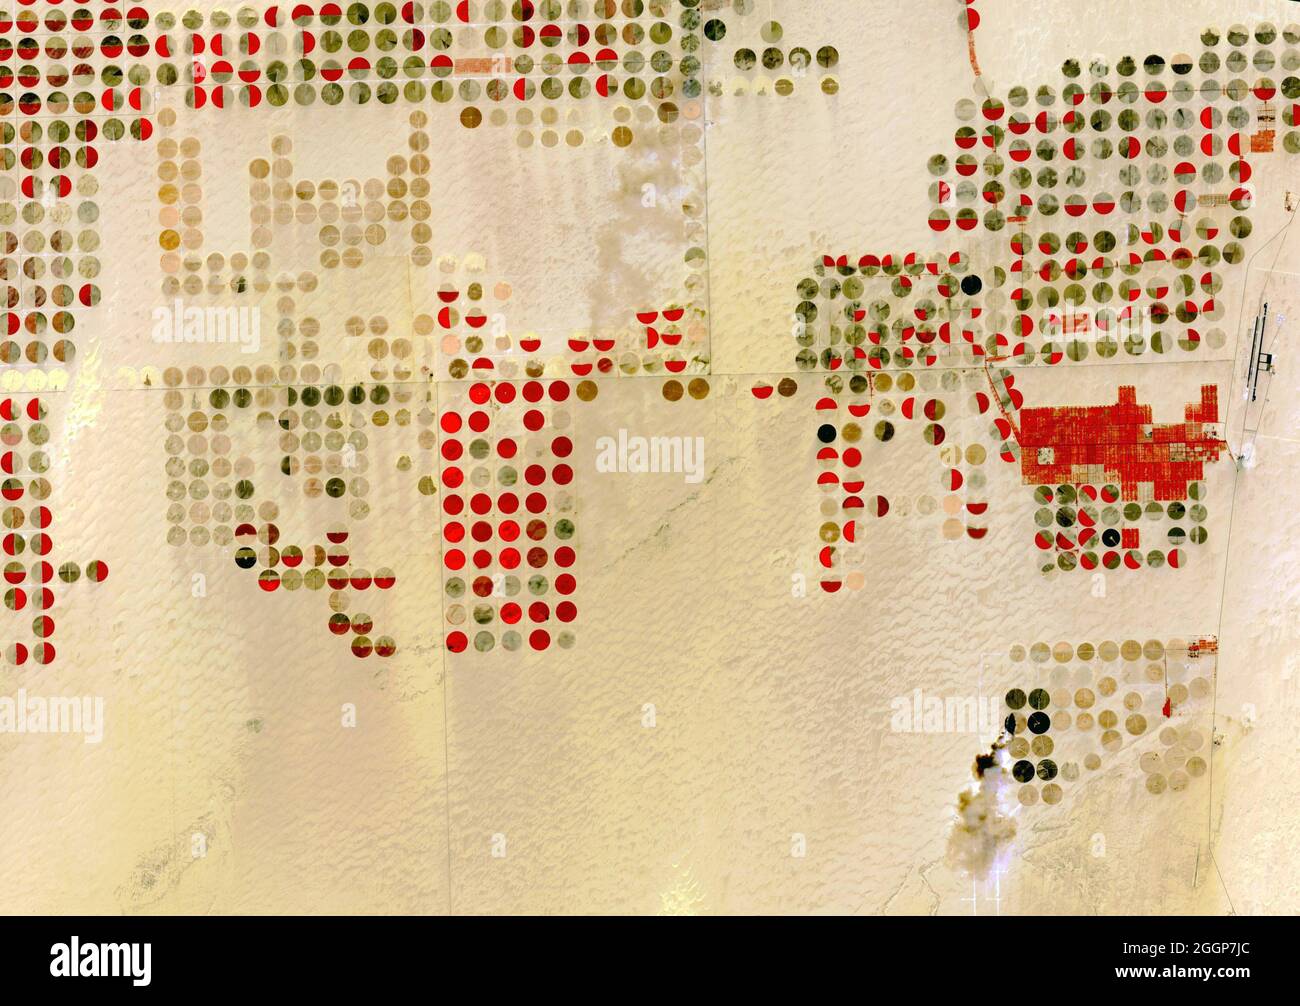 Satellitenansicht der zentralen Pivot-Bewässerung im Südwesten Ägyptens. Stockfoto